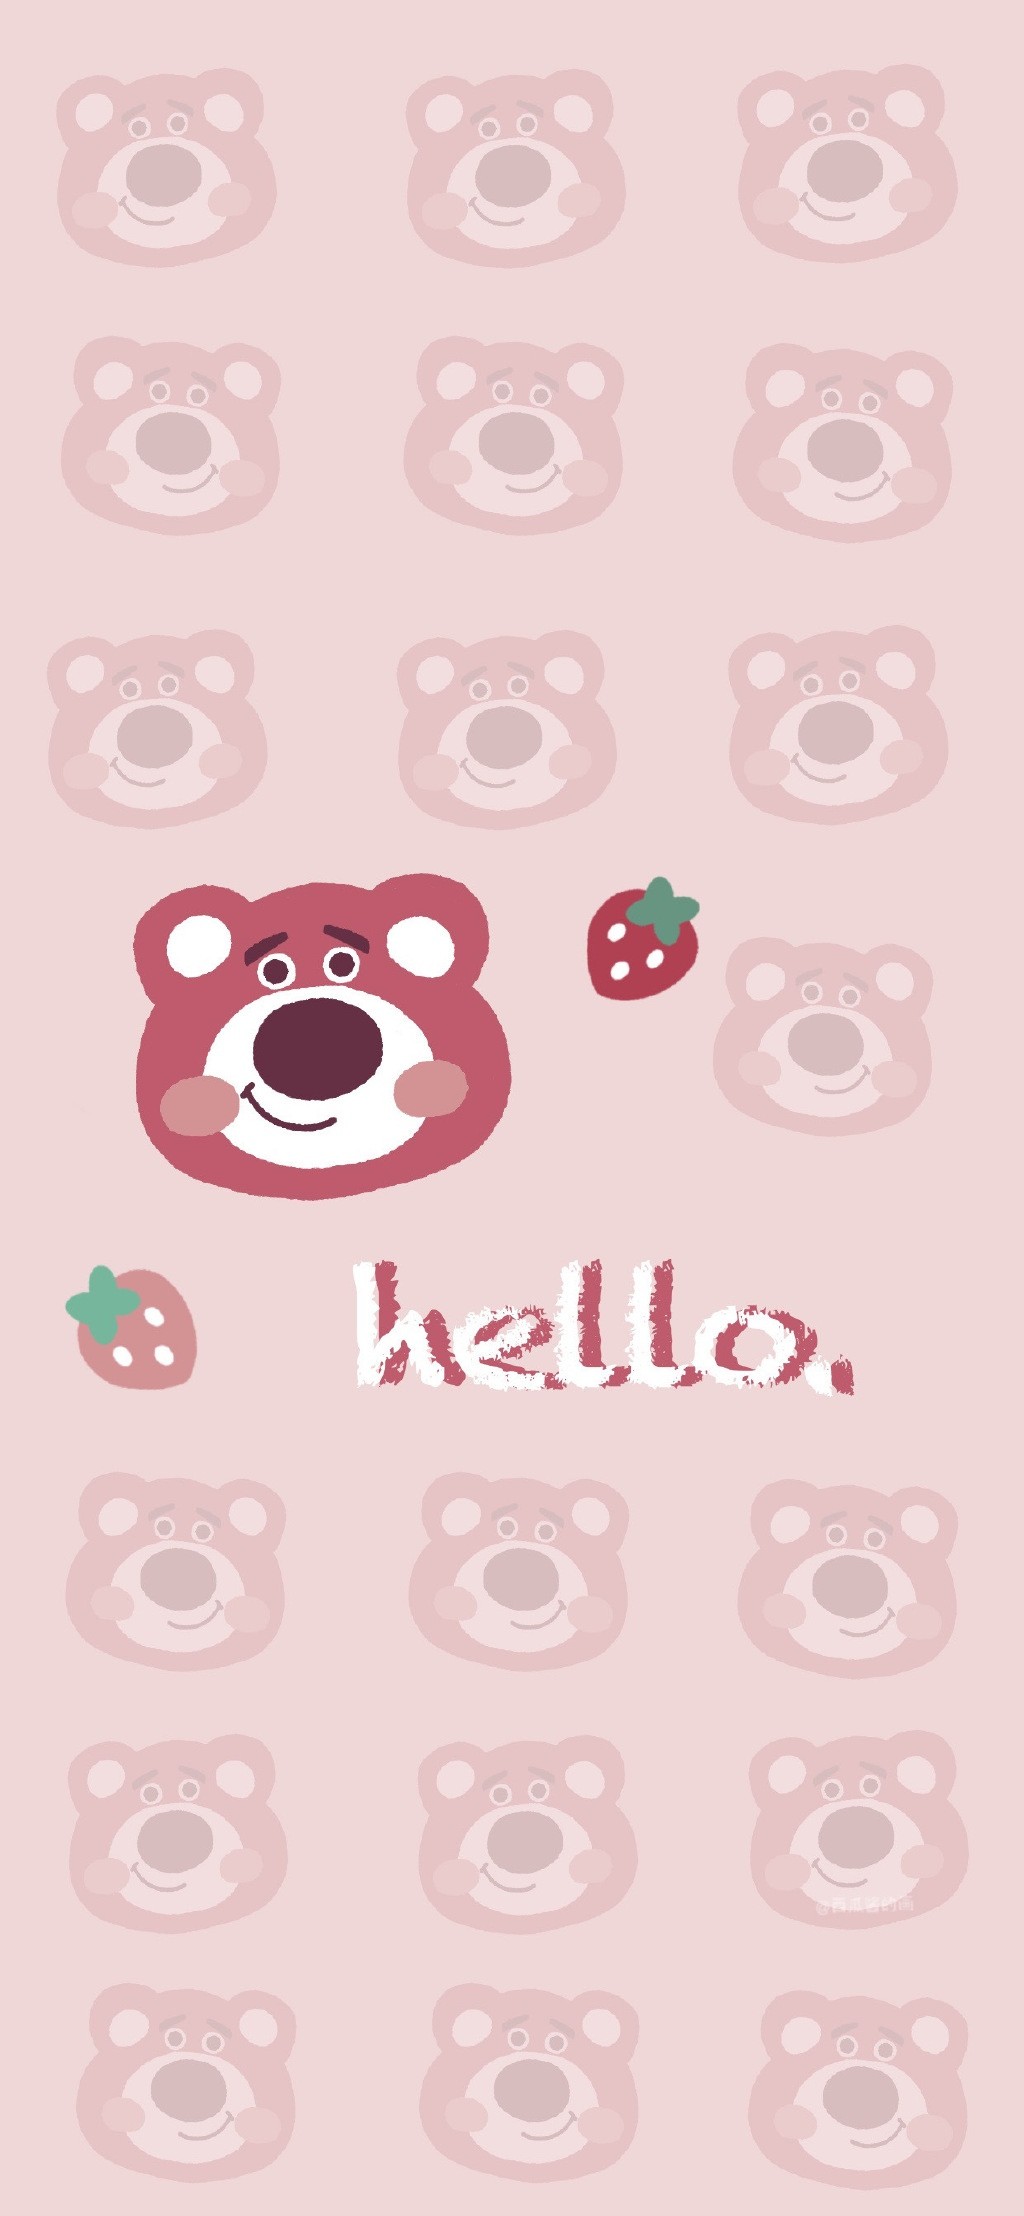 草莓熊可爱插画背景手机壁纸